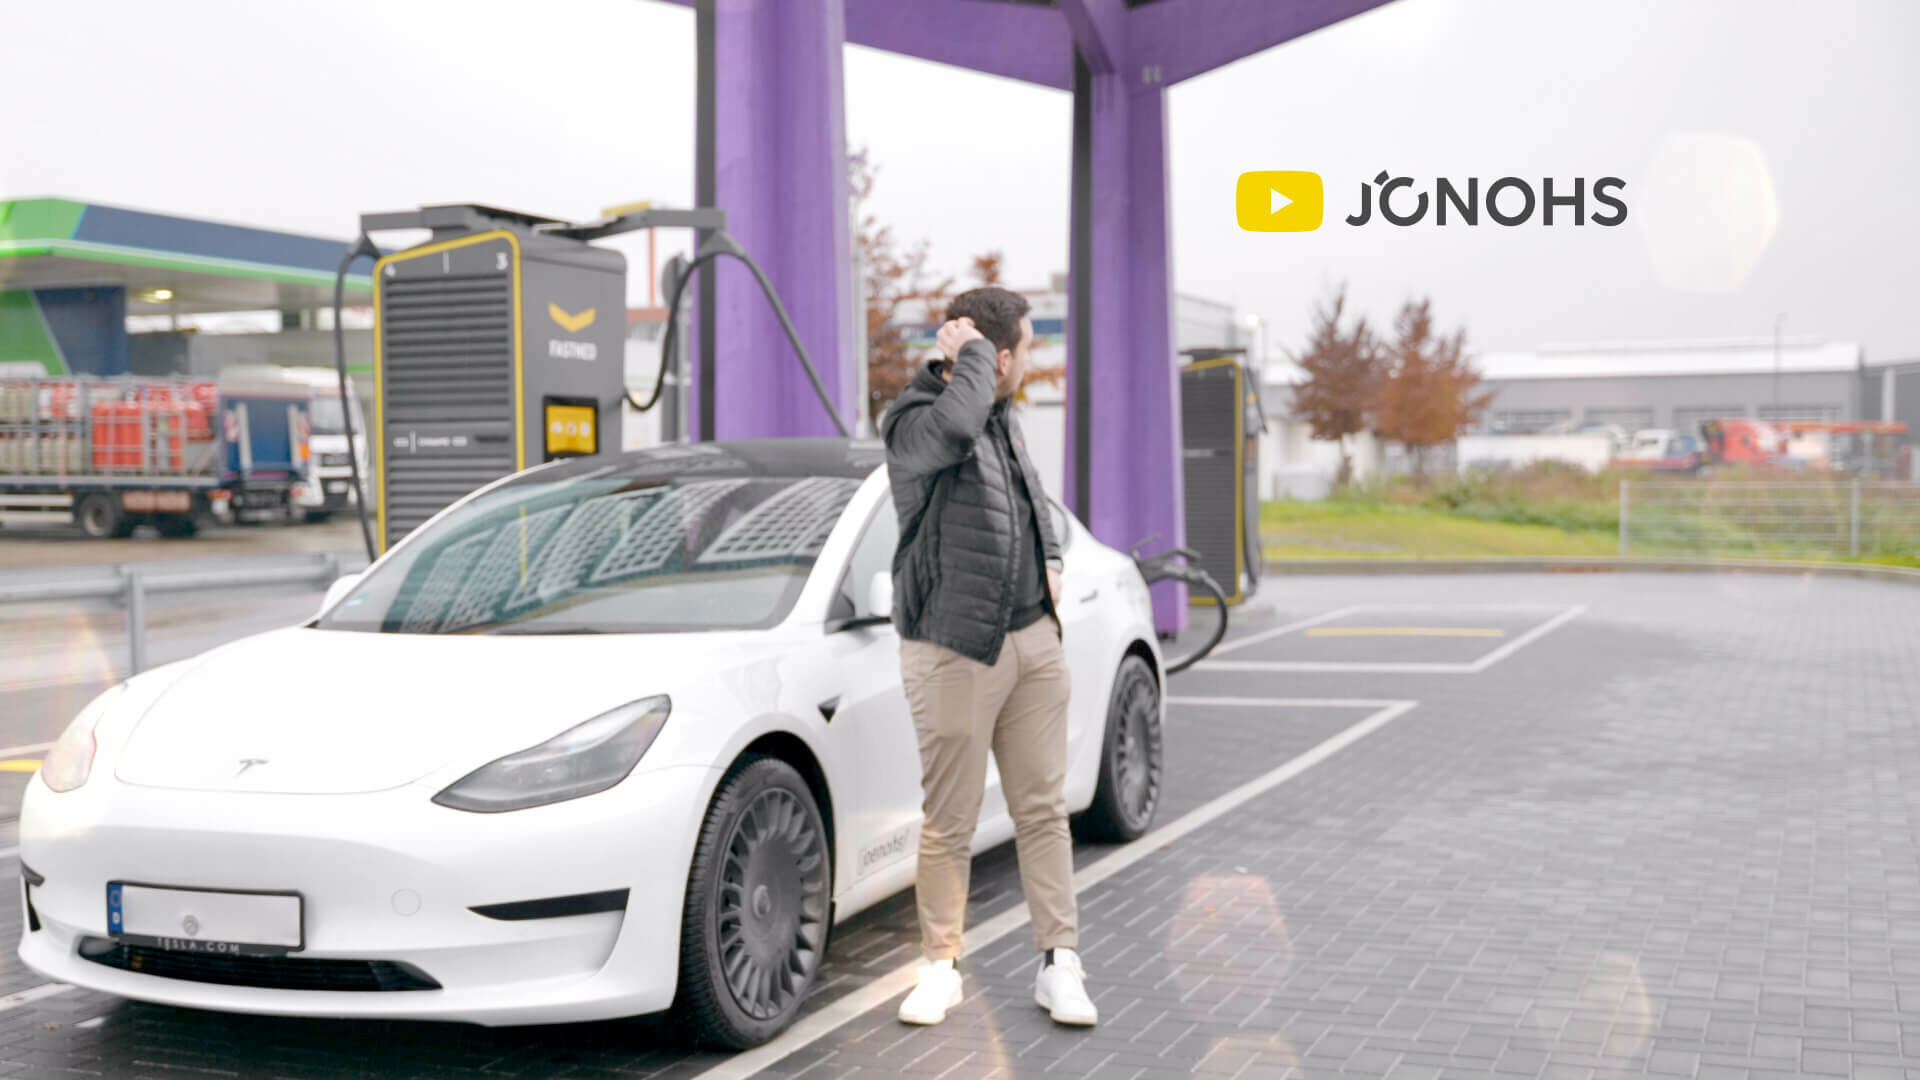 E-Auto-Tester Jonas beim Laden seines Elektroautos an einer Schnellladesäule